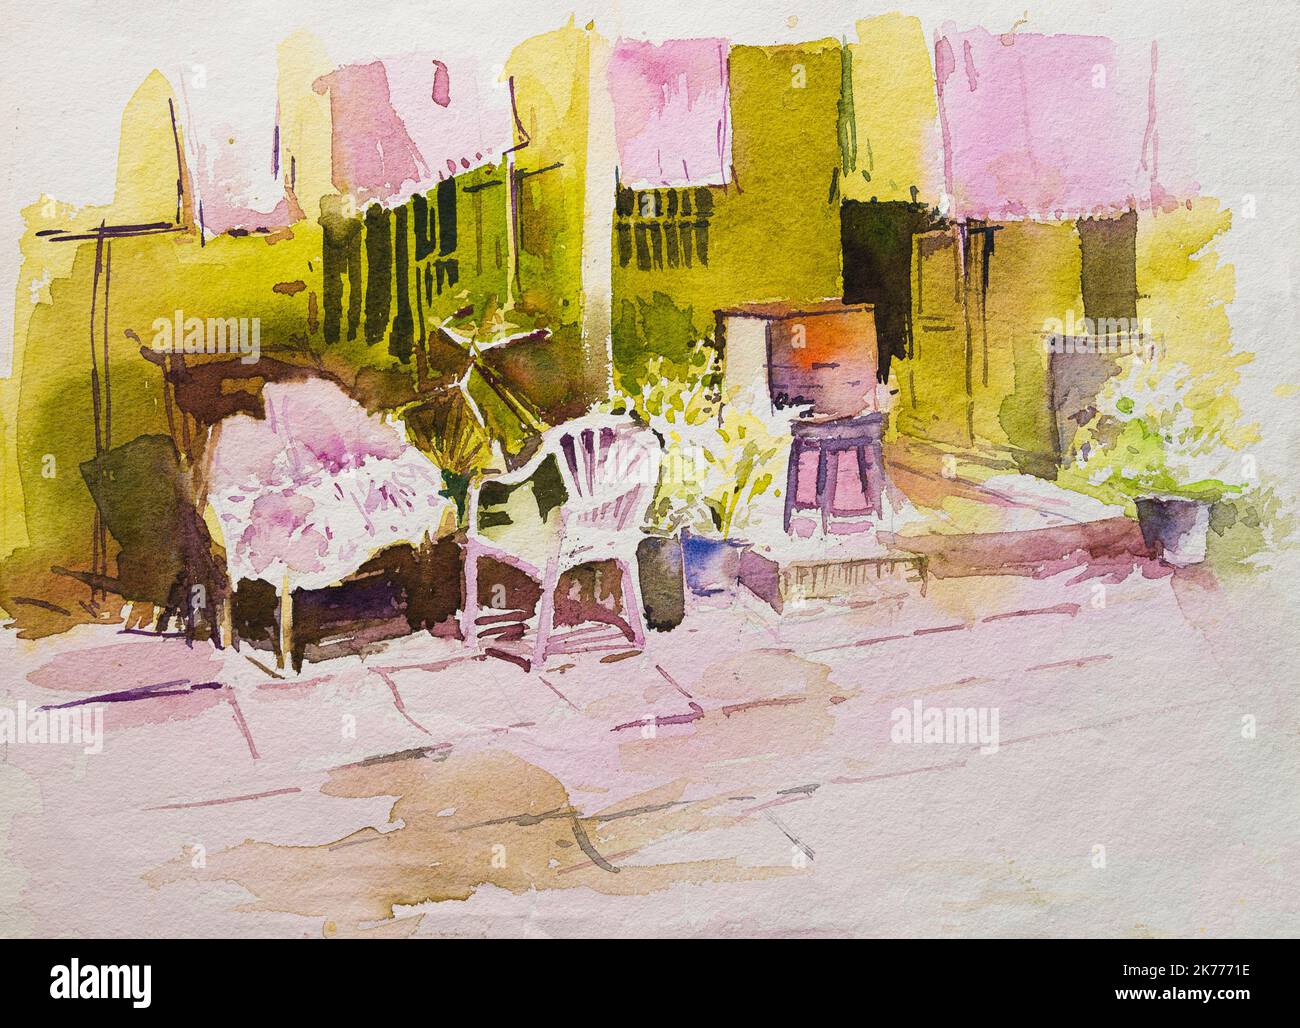 Peinture aquarelle de la maison avec terrasse, jeu de lumière réfléchie et d'ombres sur les chaises de ménage. Illustration peinte à la main. paysage urbain. Banque D'Images